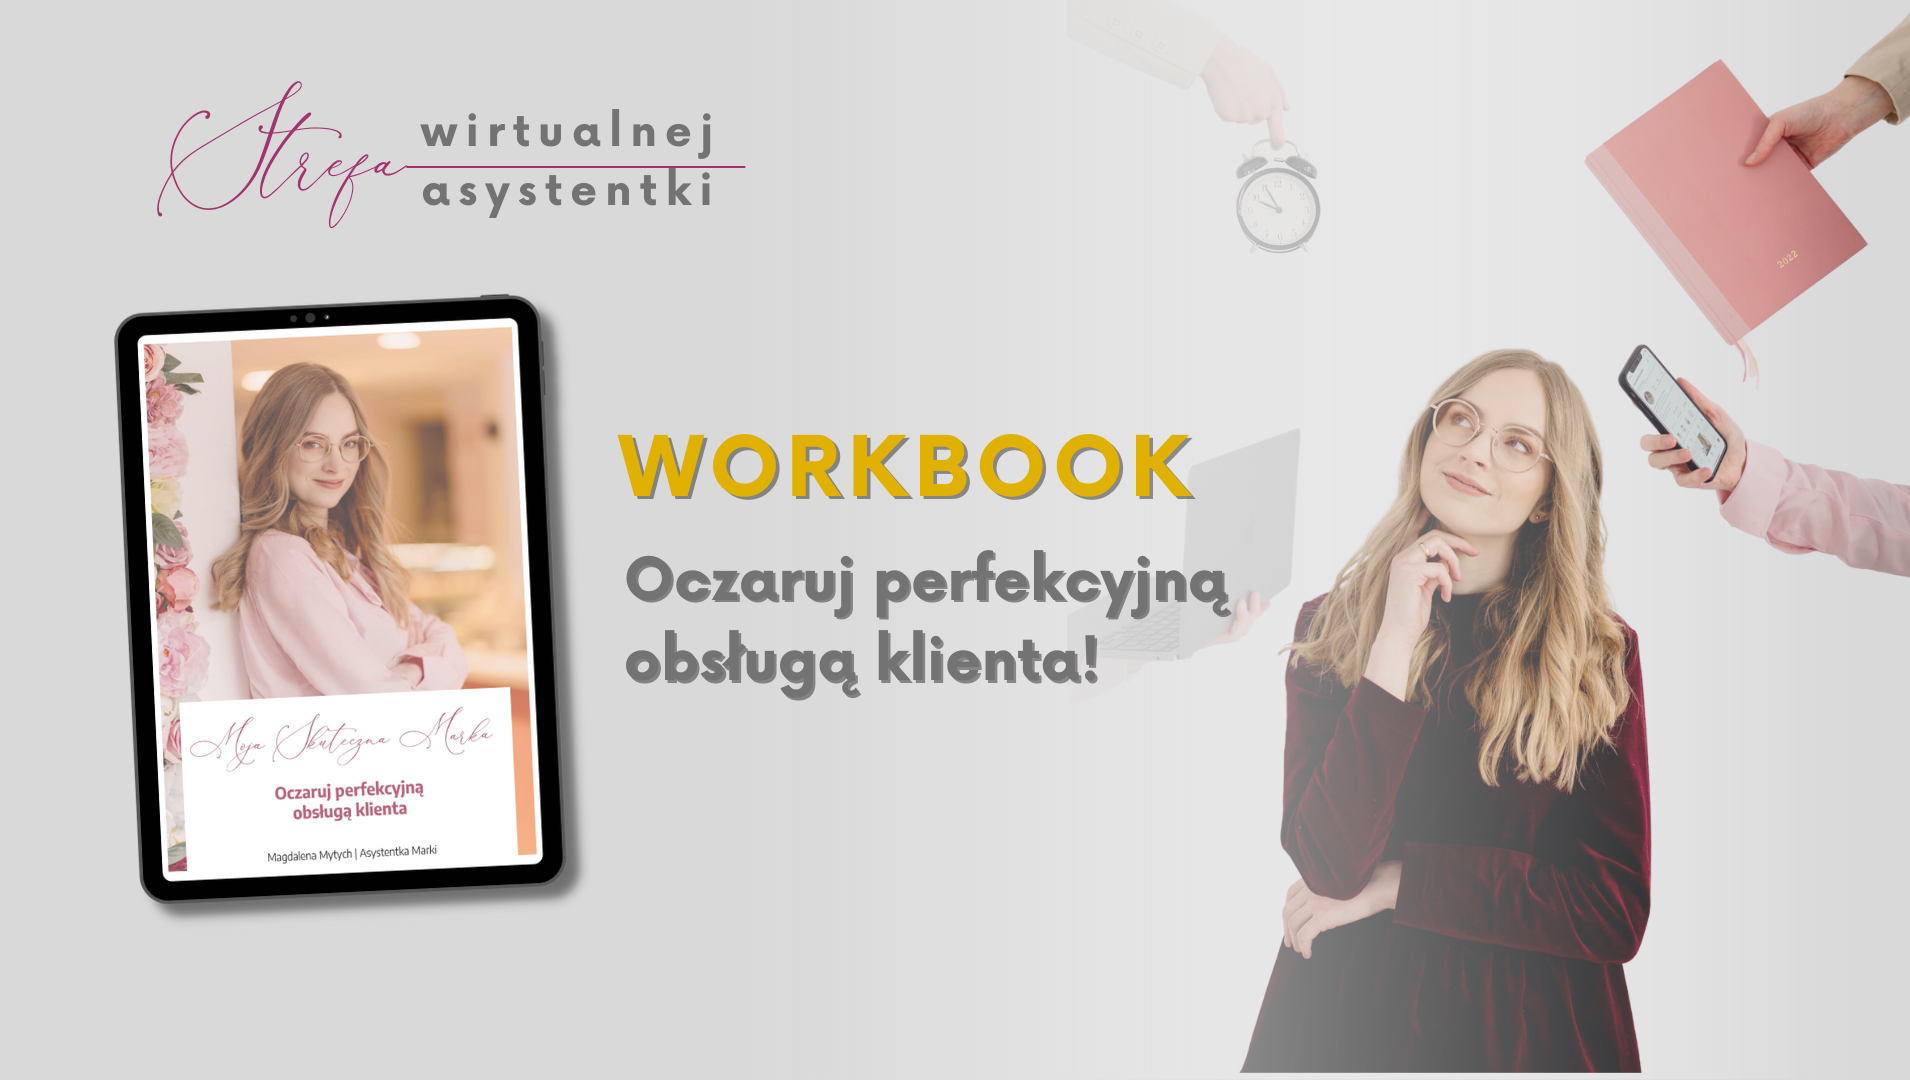 WorkBook: Oczaruj perfekcyjną obsługą klienta